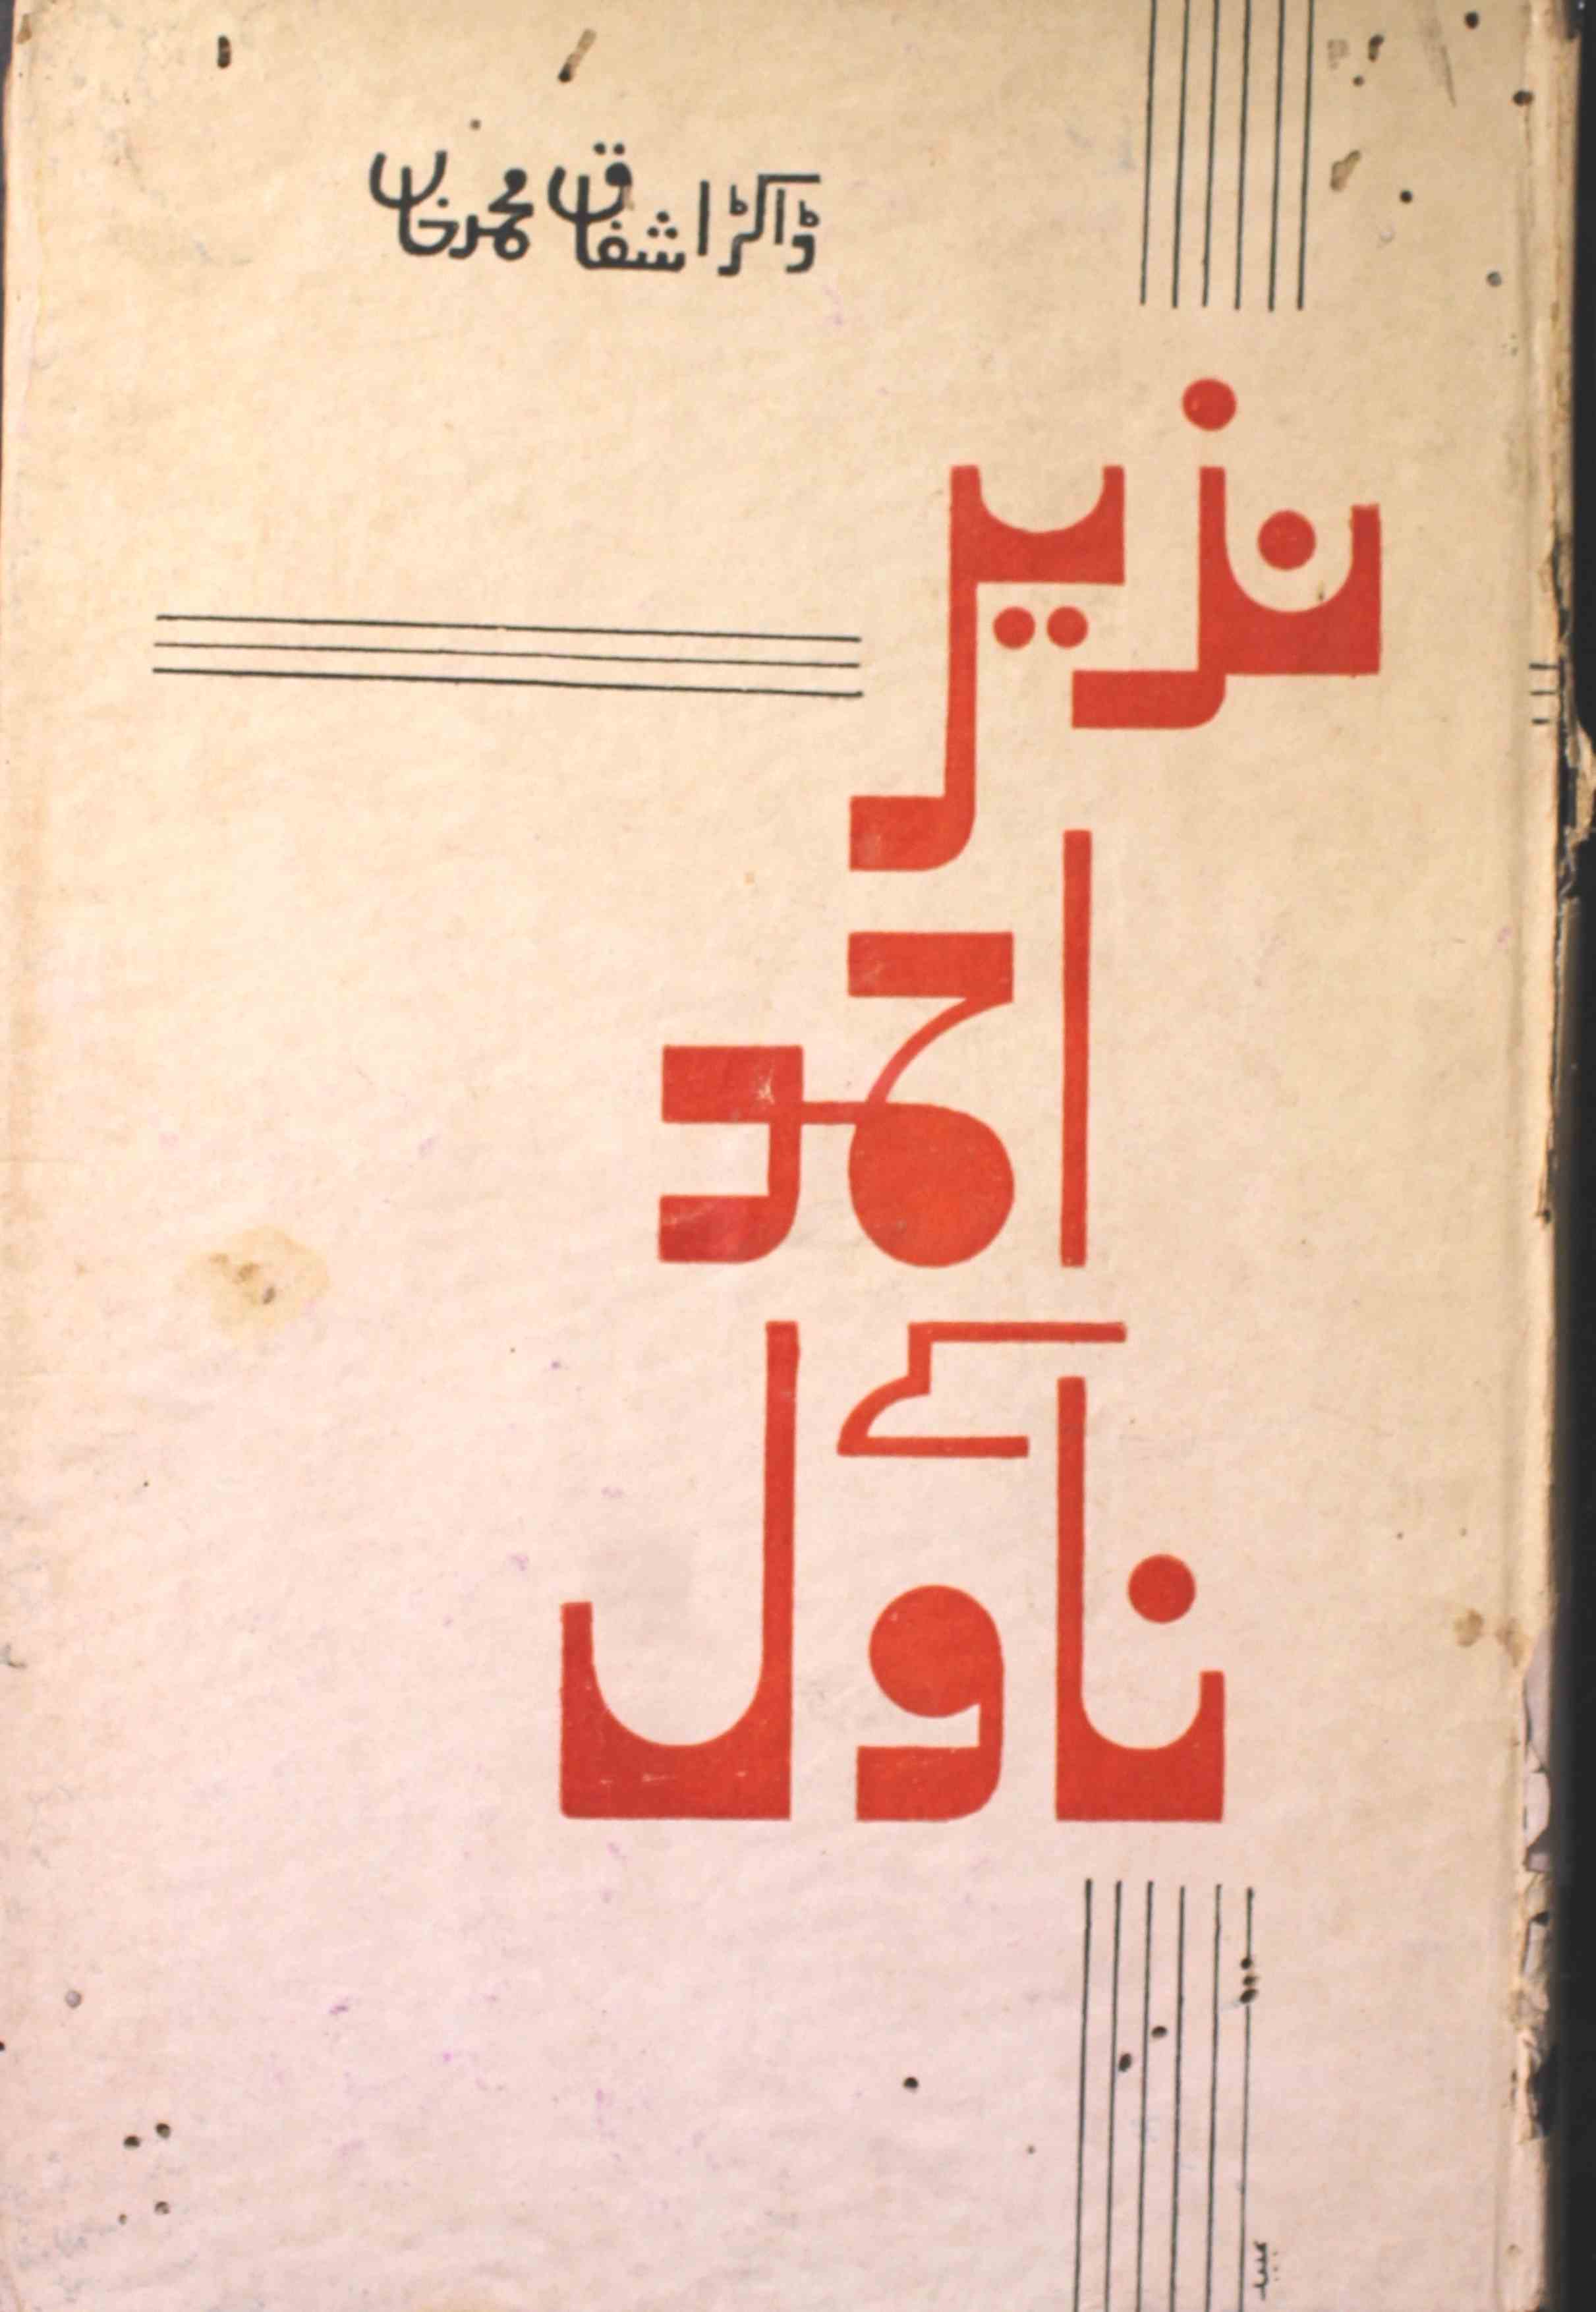 نذیر احمد کے ناول